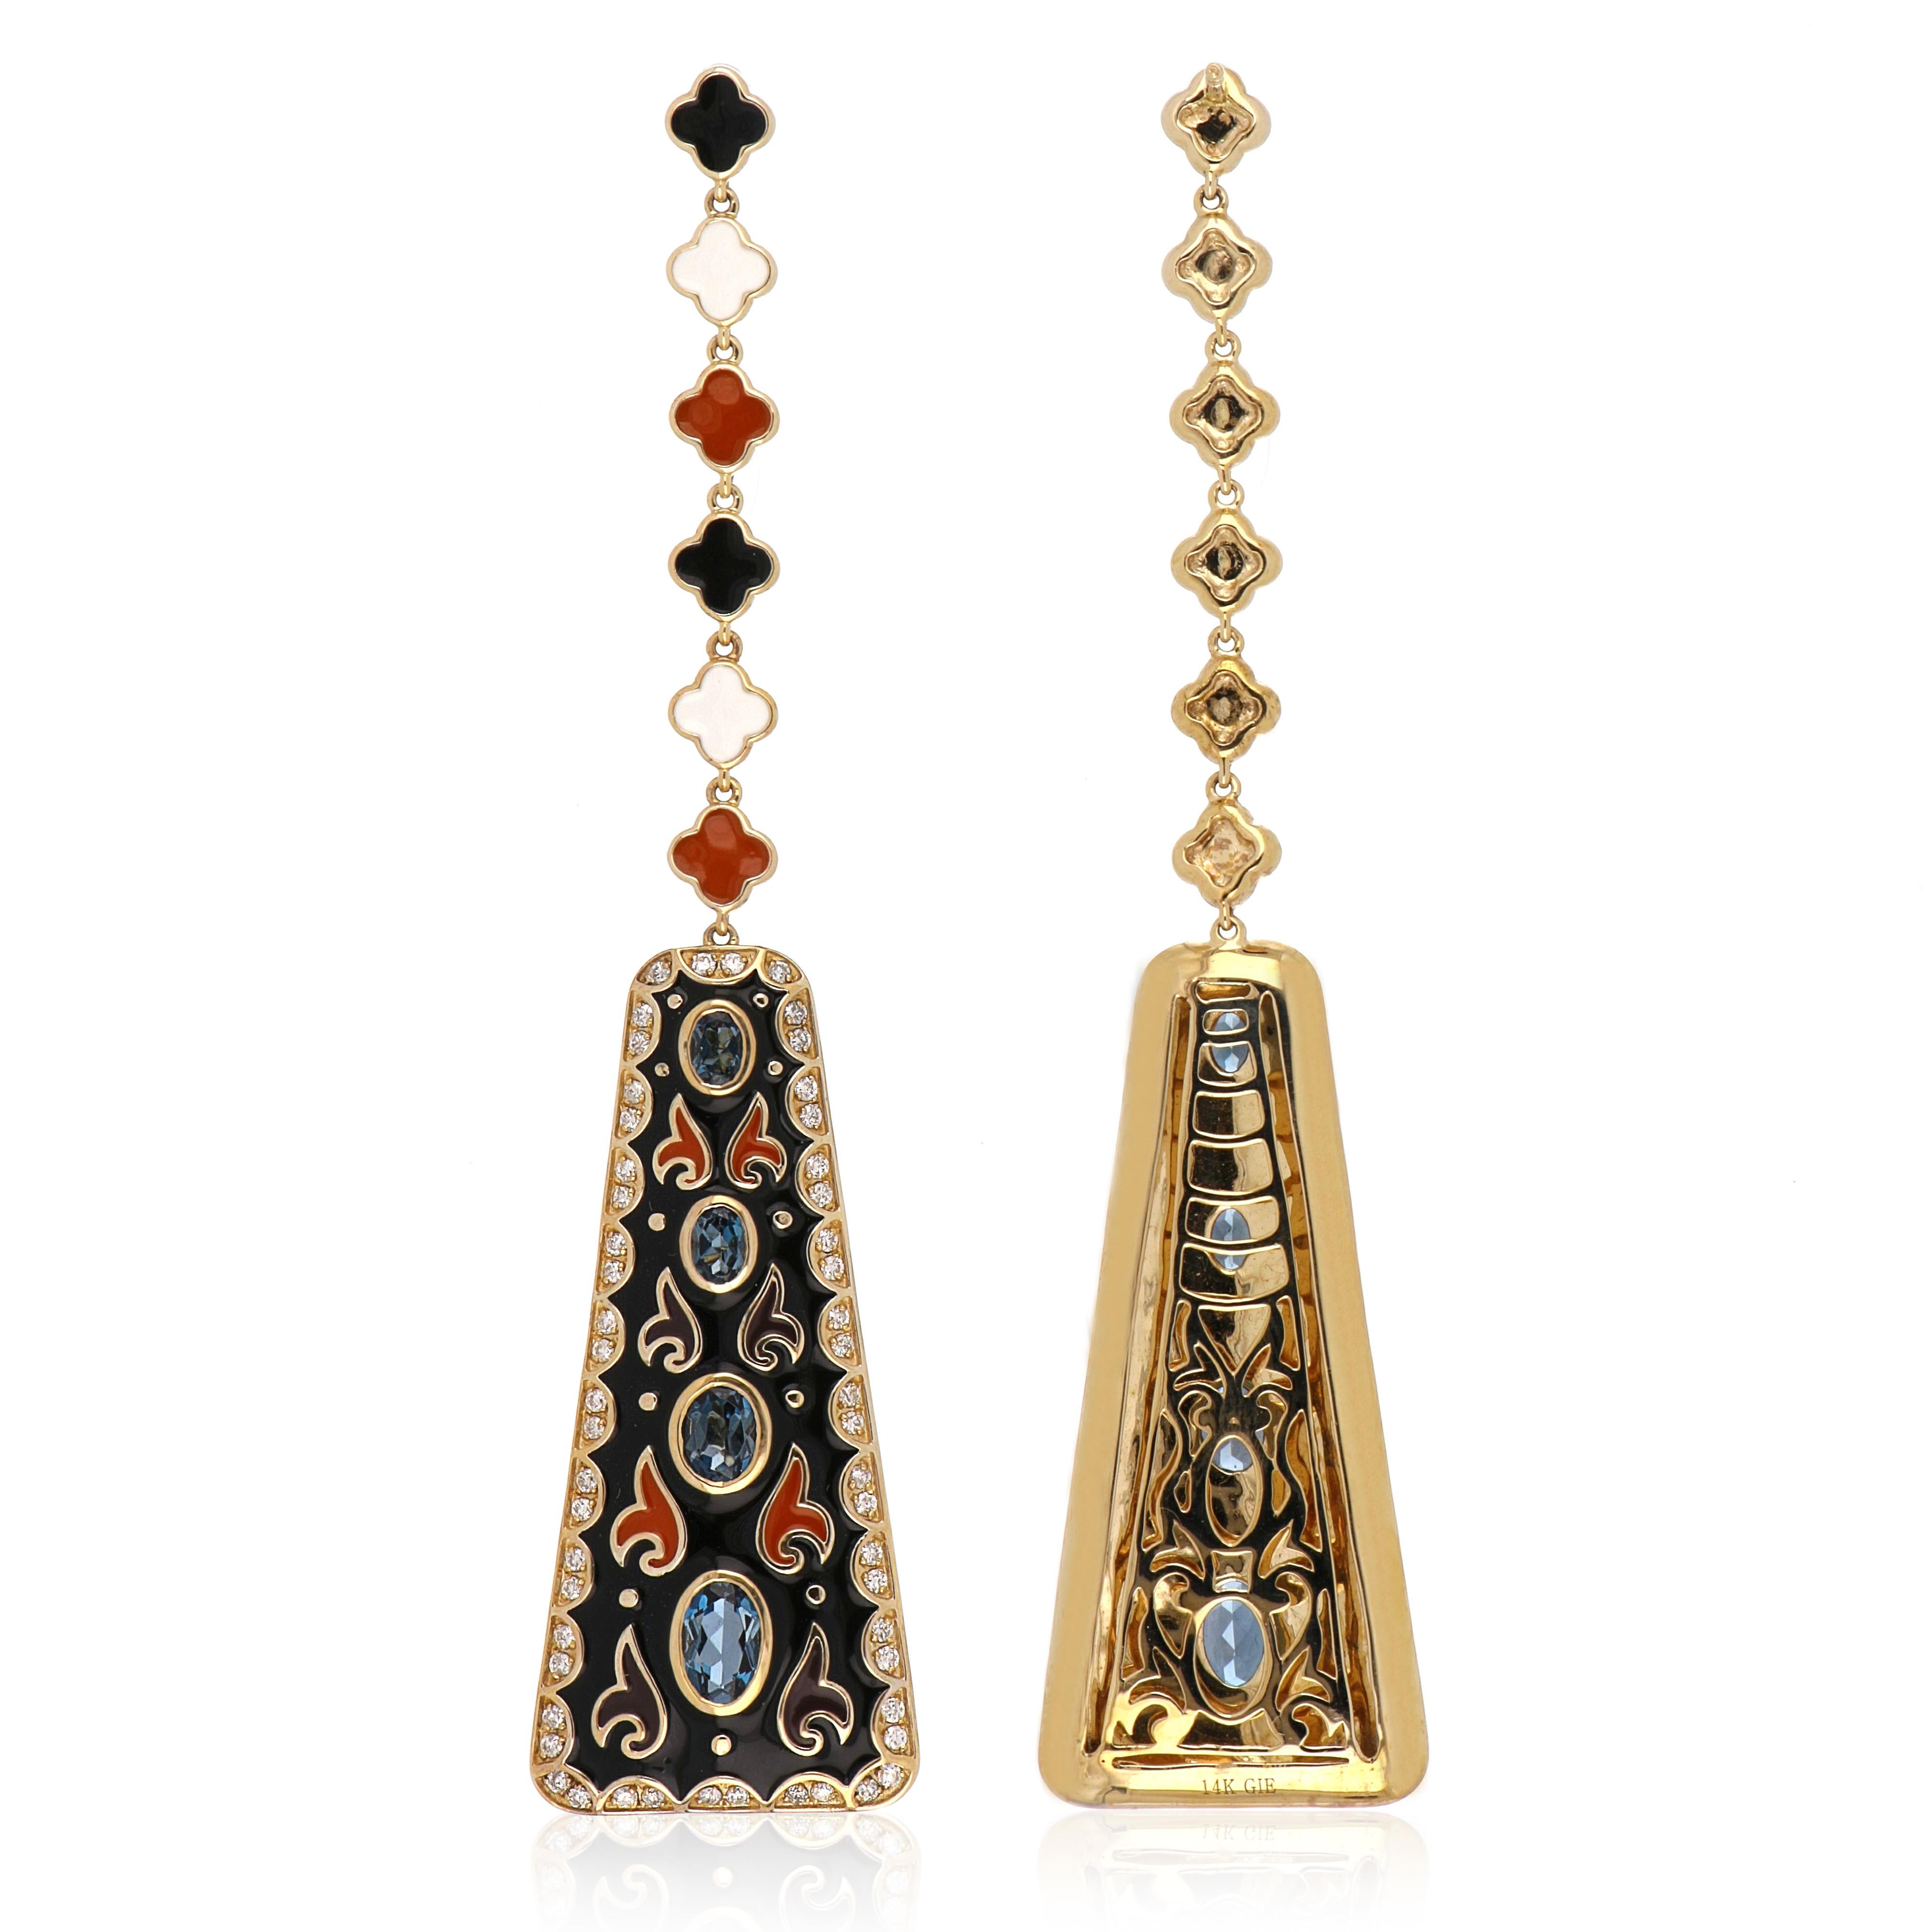 Oval Cut London Blue Topaz Studded Enamel Earrings in 14 Karat Gold For Sale